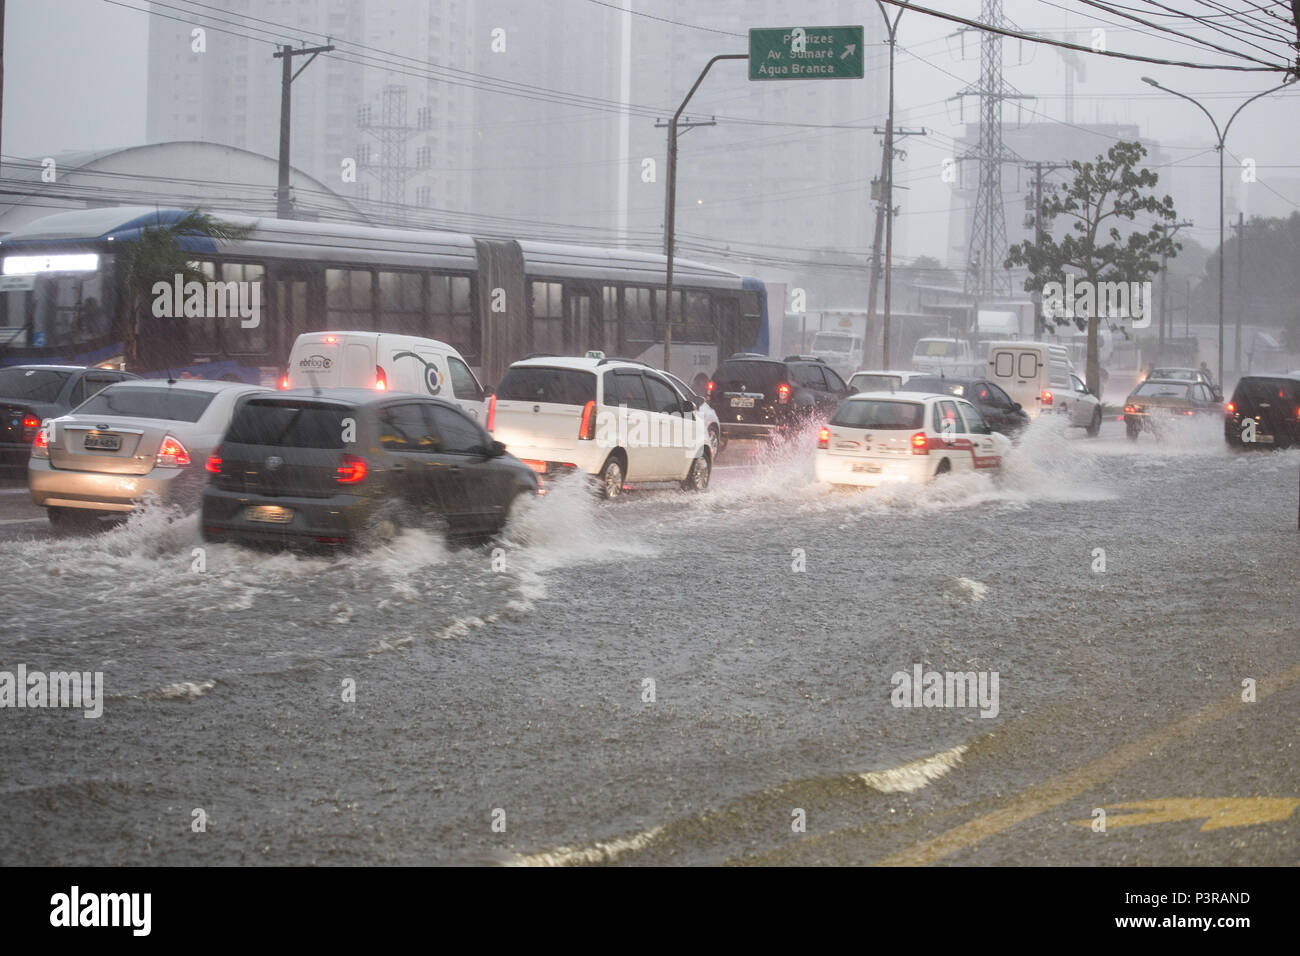 SÃO PAULO, SP - 25.02.2015: ALAGAMENTO EM SÃO PAULO - Vista de carros na avenida Marquês de São Vicente, após enchente devido a forte chuva. (Foto: Luis Blanco / Fotoarena) Stock Photo